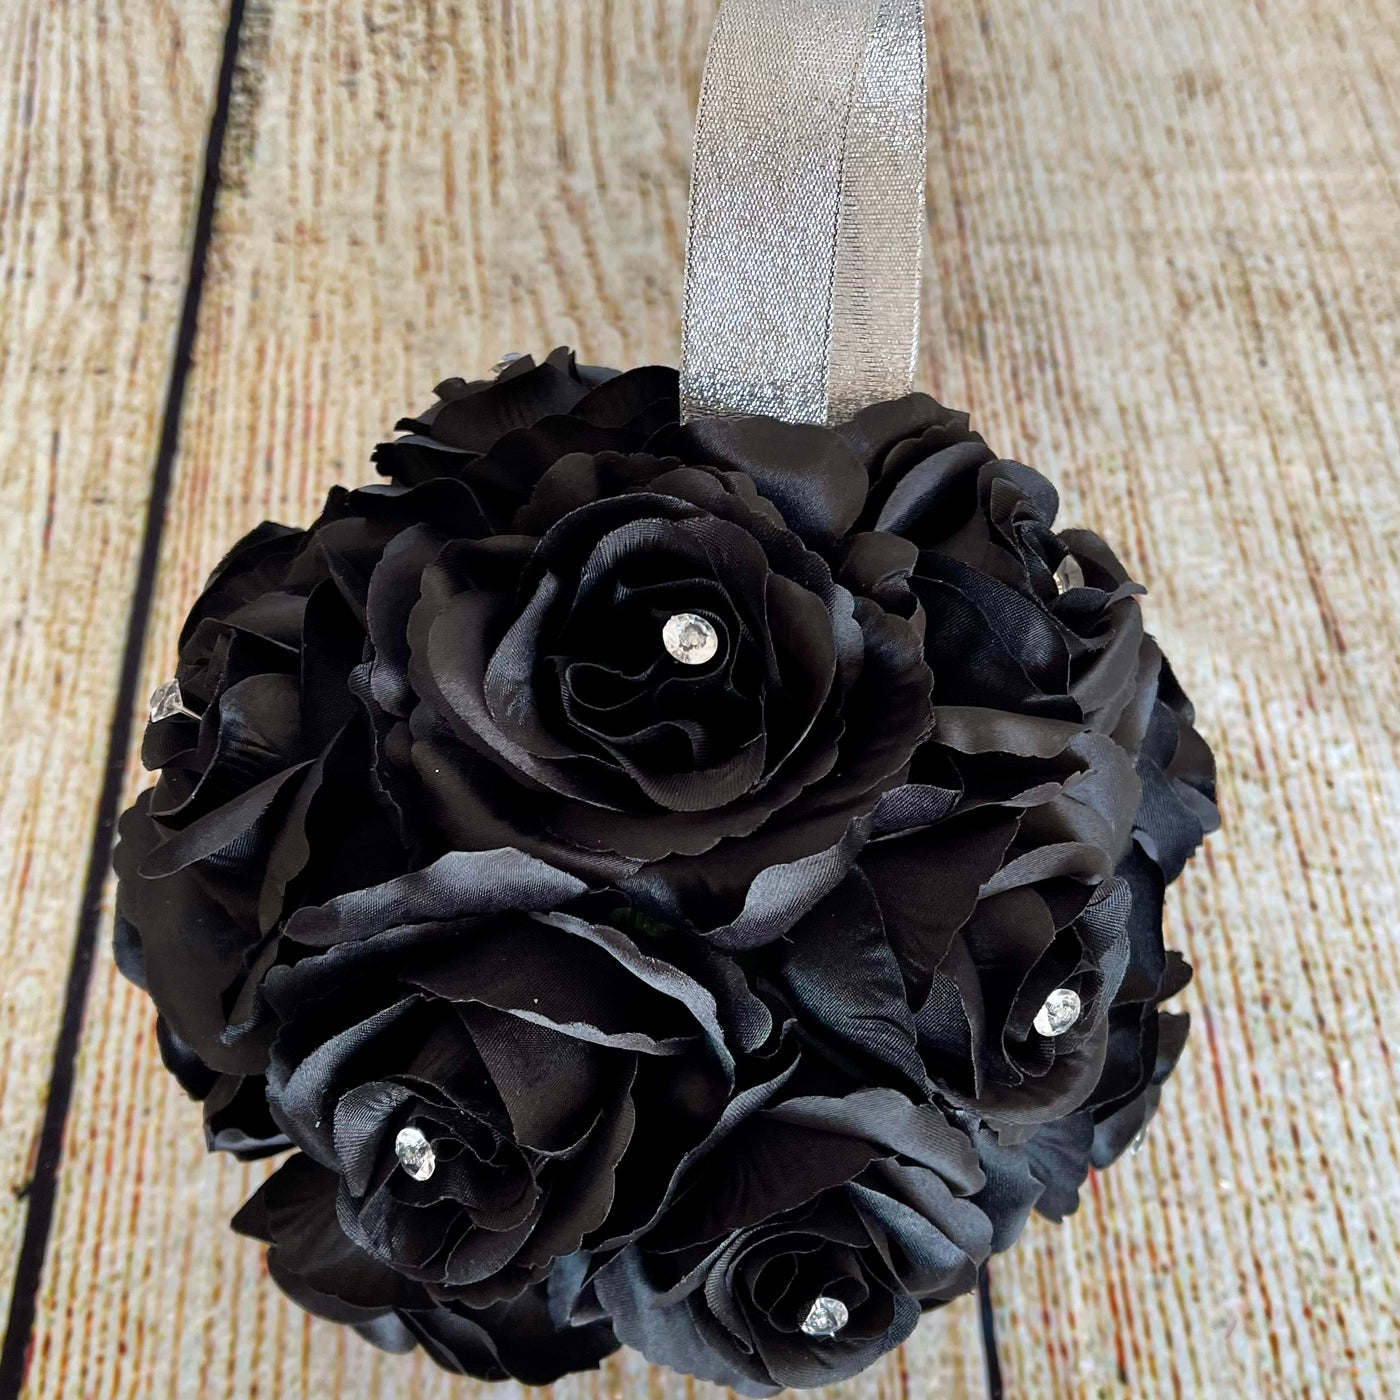 Custom Kissing Flower Ball